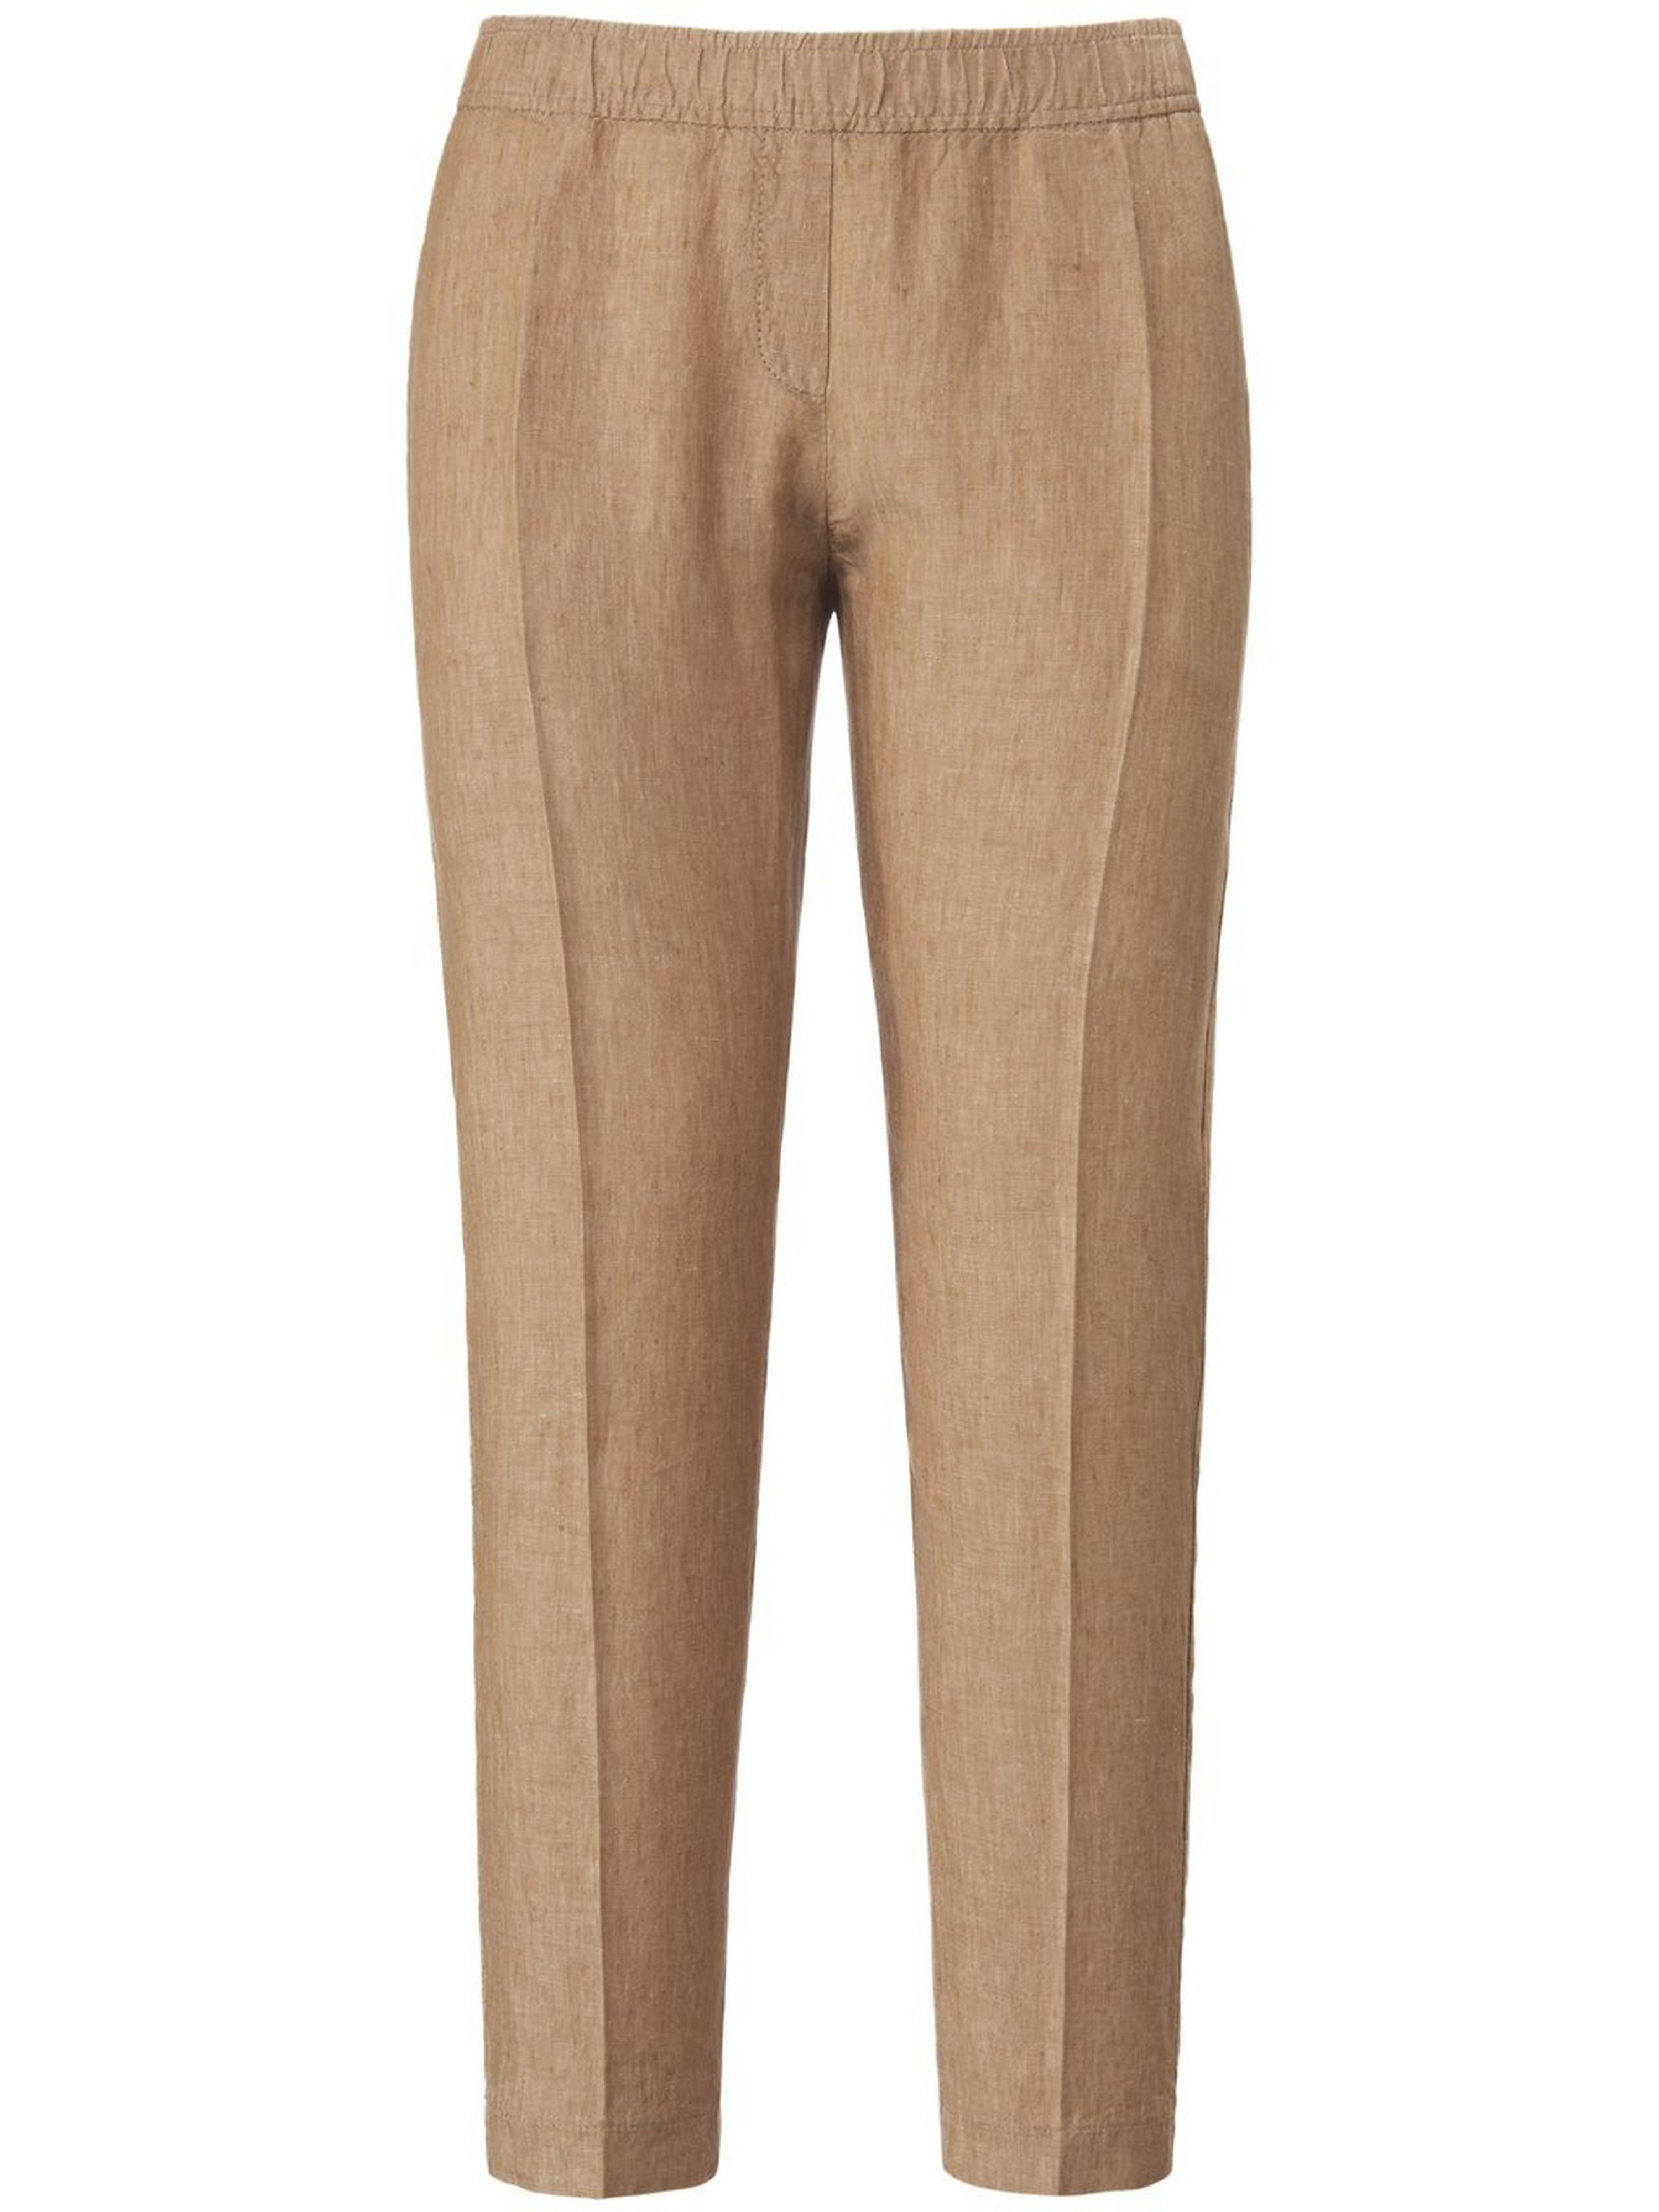 Le pantalon modern fit model Maron  Brax Feel Good beige